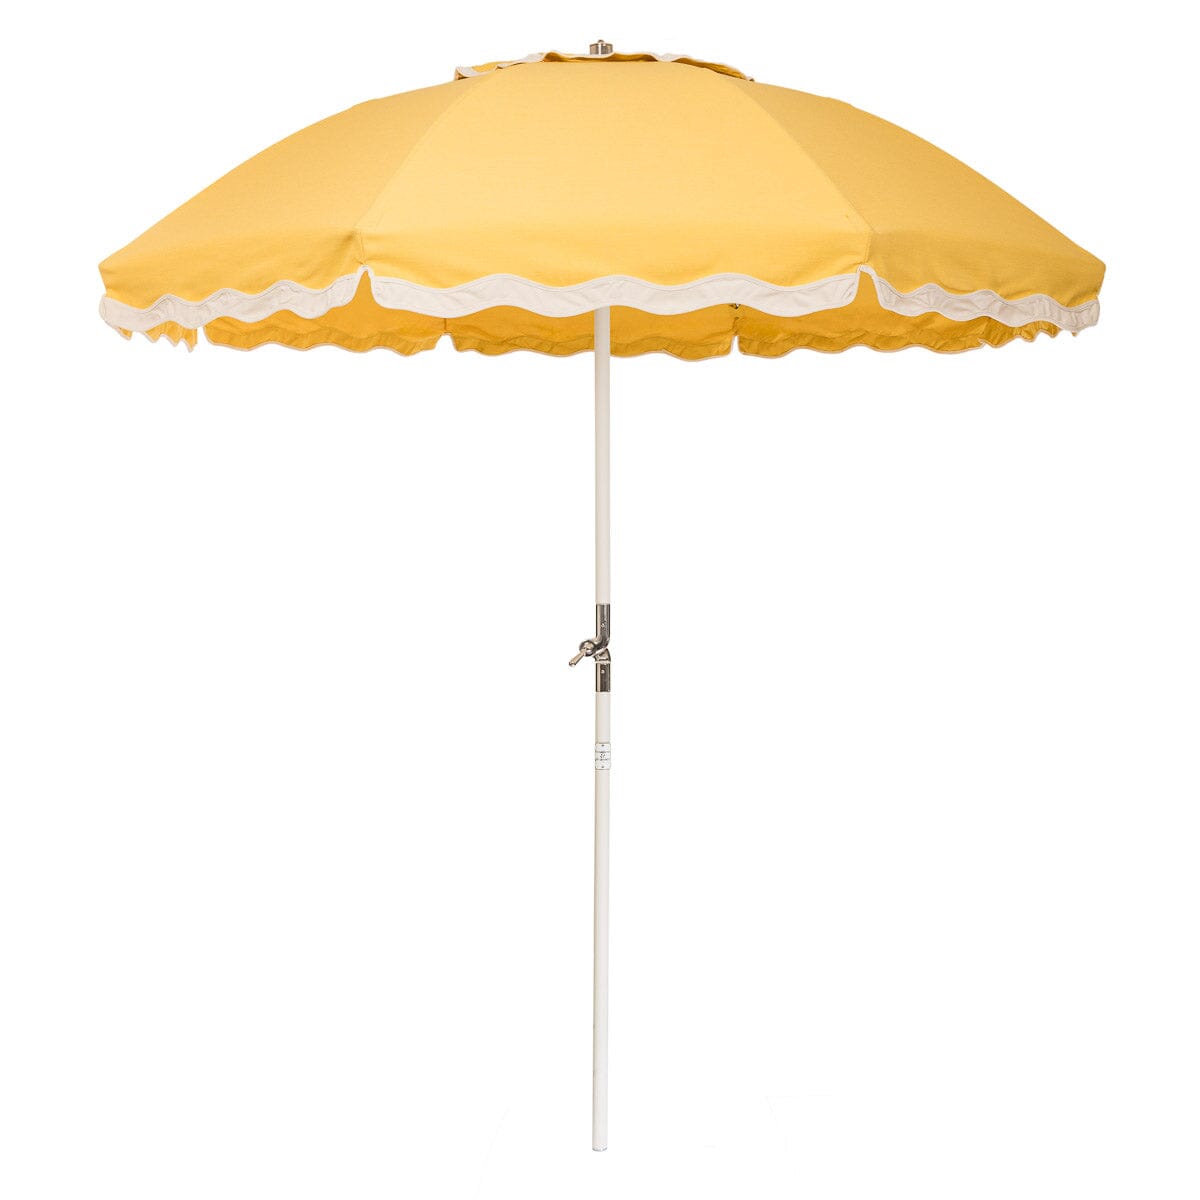 The Club Umbrella - Rivie Mimosa Club Umbrella Business & Pleasure Co. 